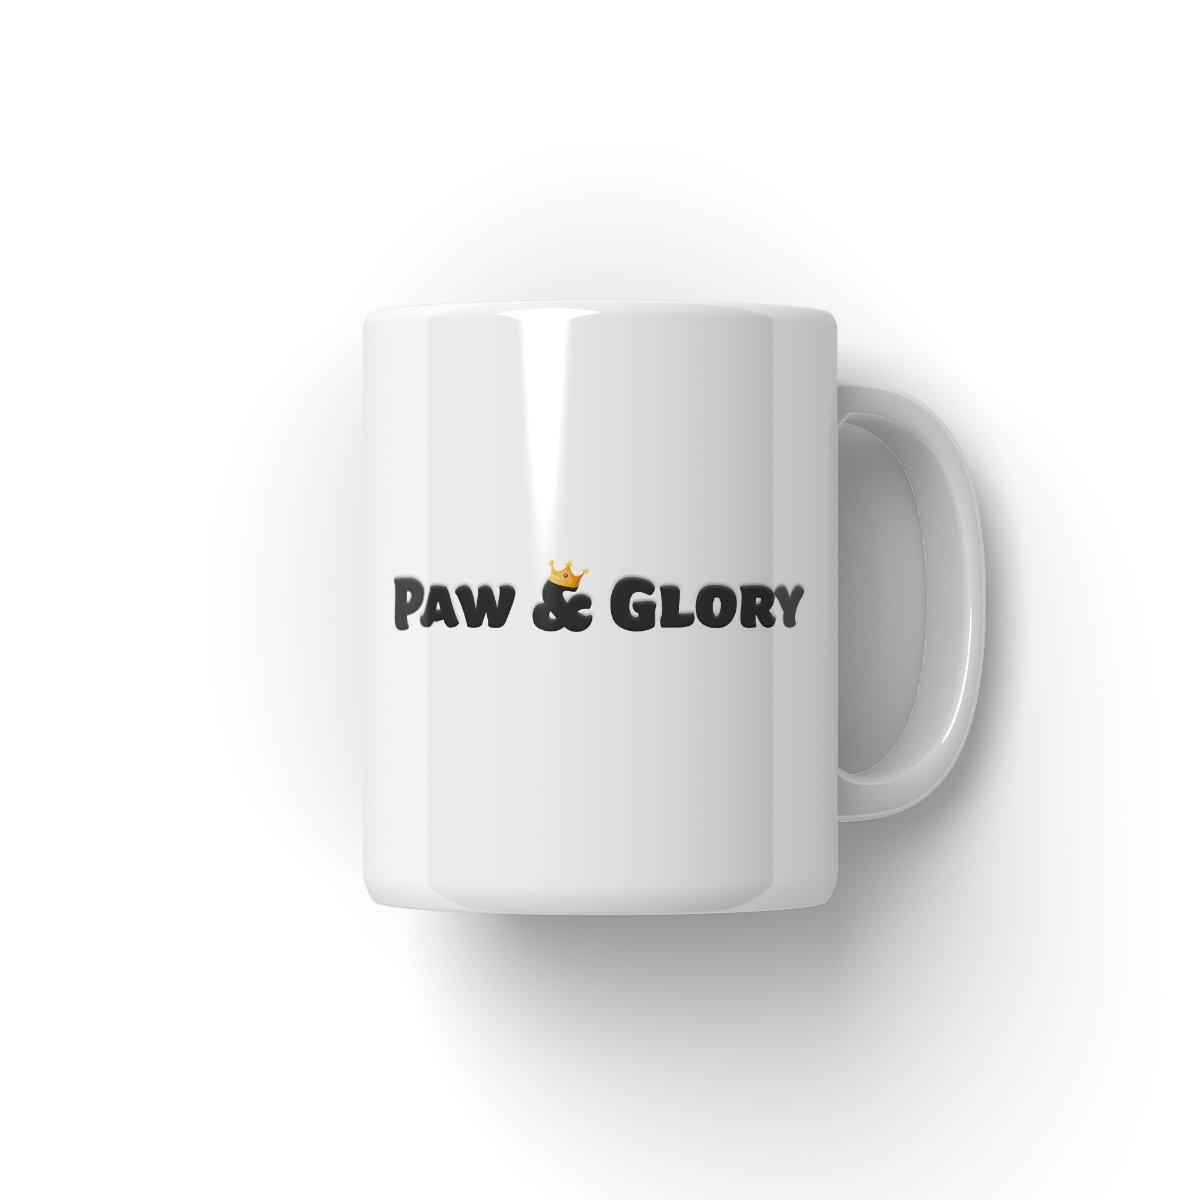 Scotland Rugby Team: Paw & Glory, paw and glory, puppy mug, personalised dog mug uk, custom pet mug, personalized pet mug portraits, dog photo mug, personalised pet mug, Pet Portraits Mug